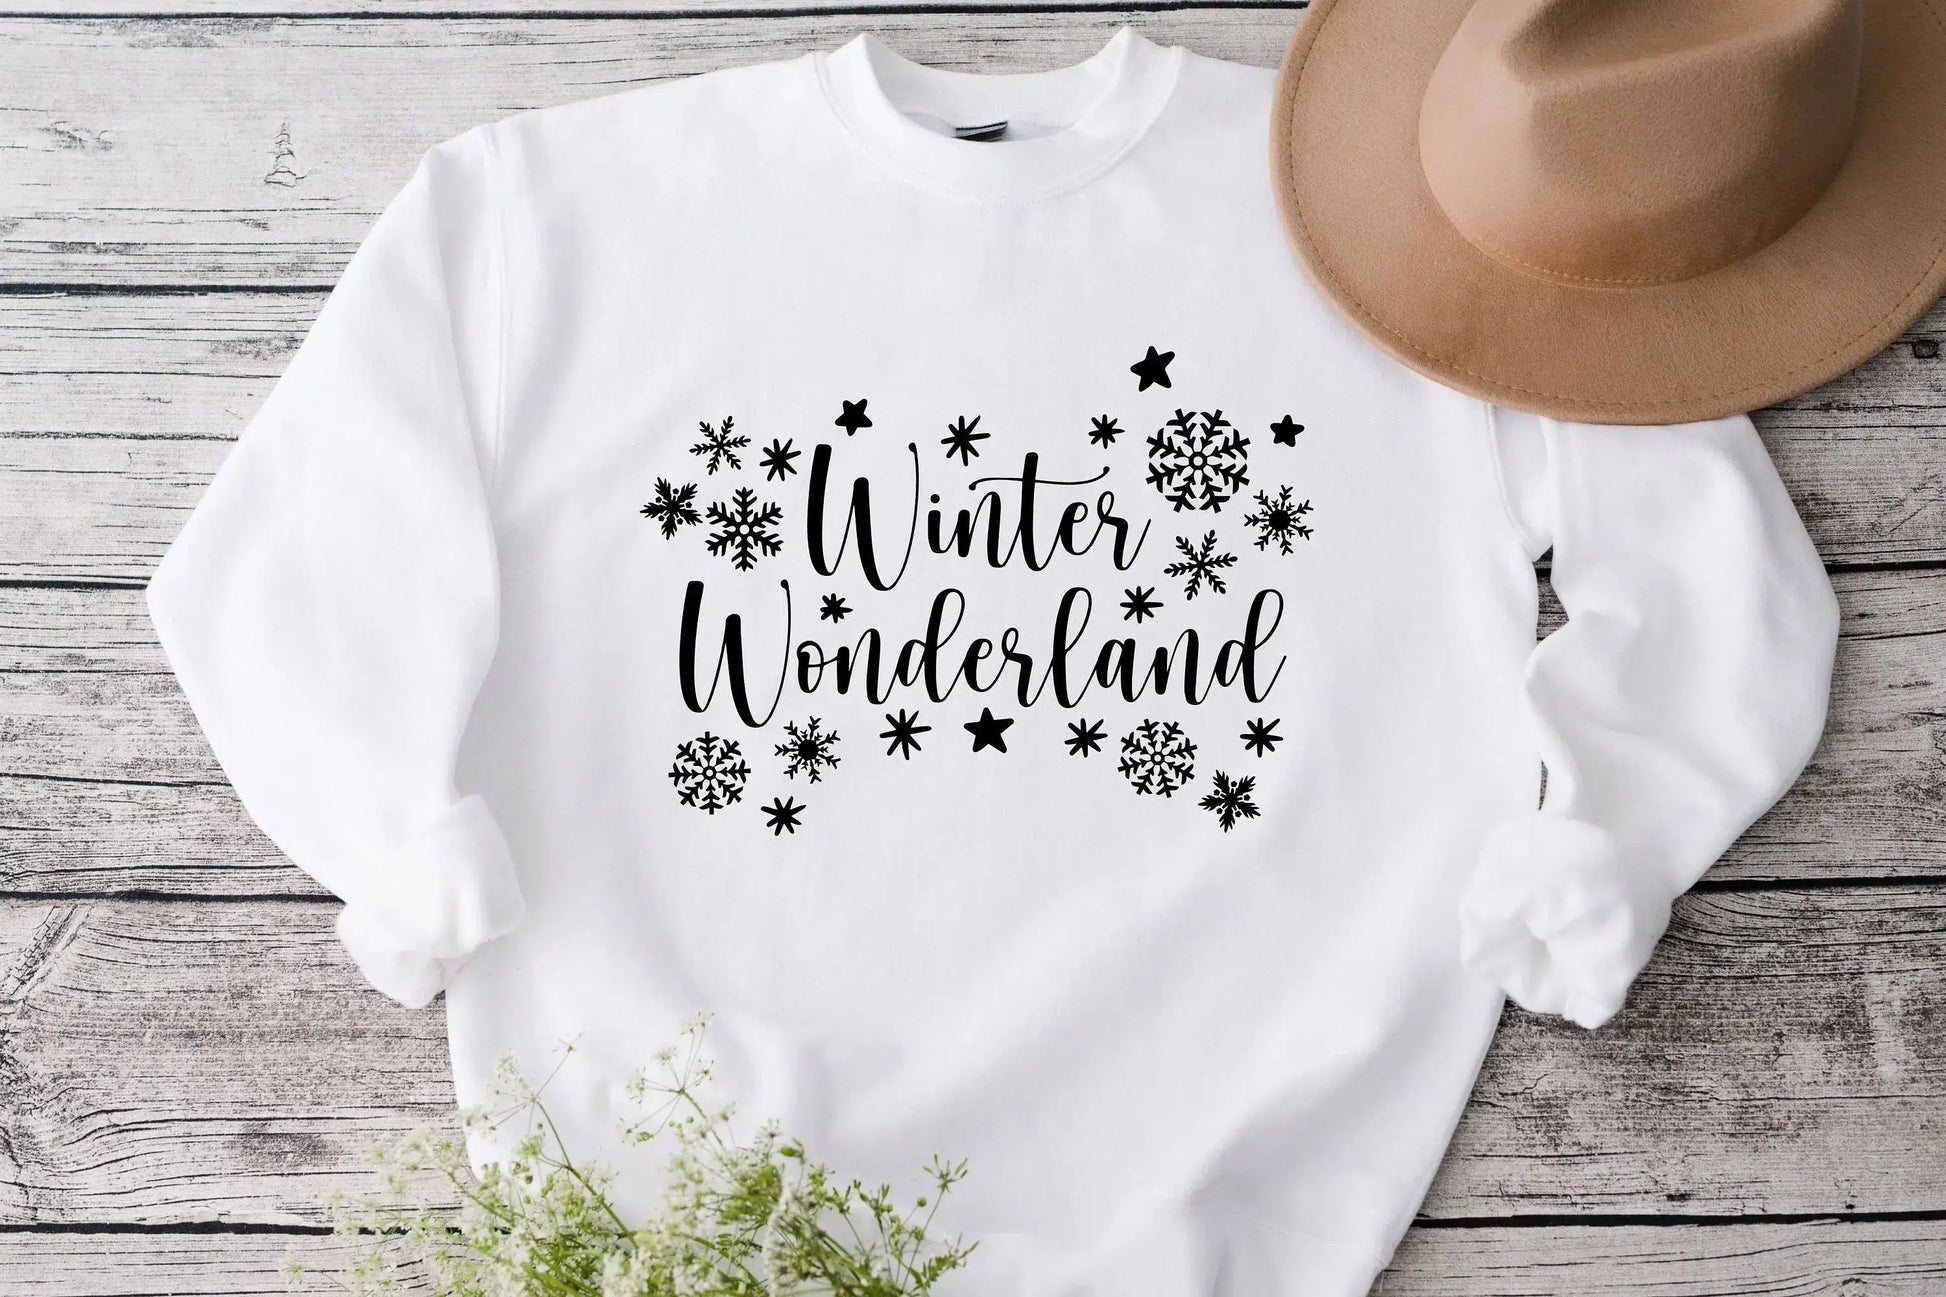 Winter Wonderland, Christmas T-shirt for Women